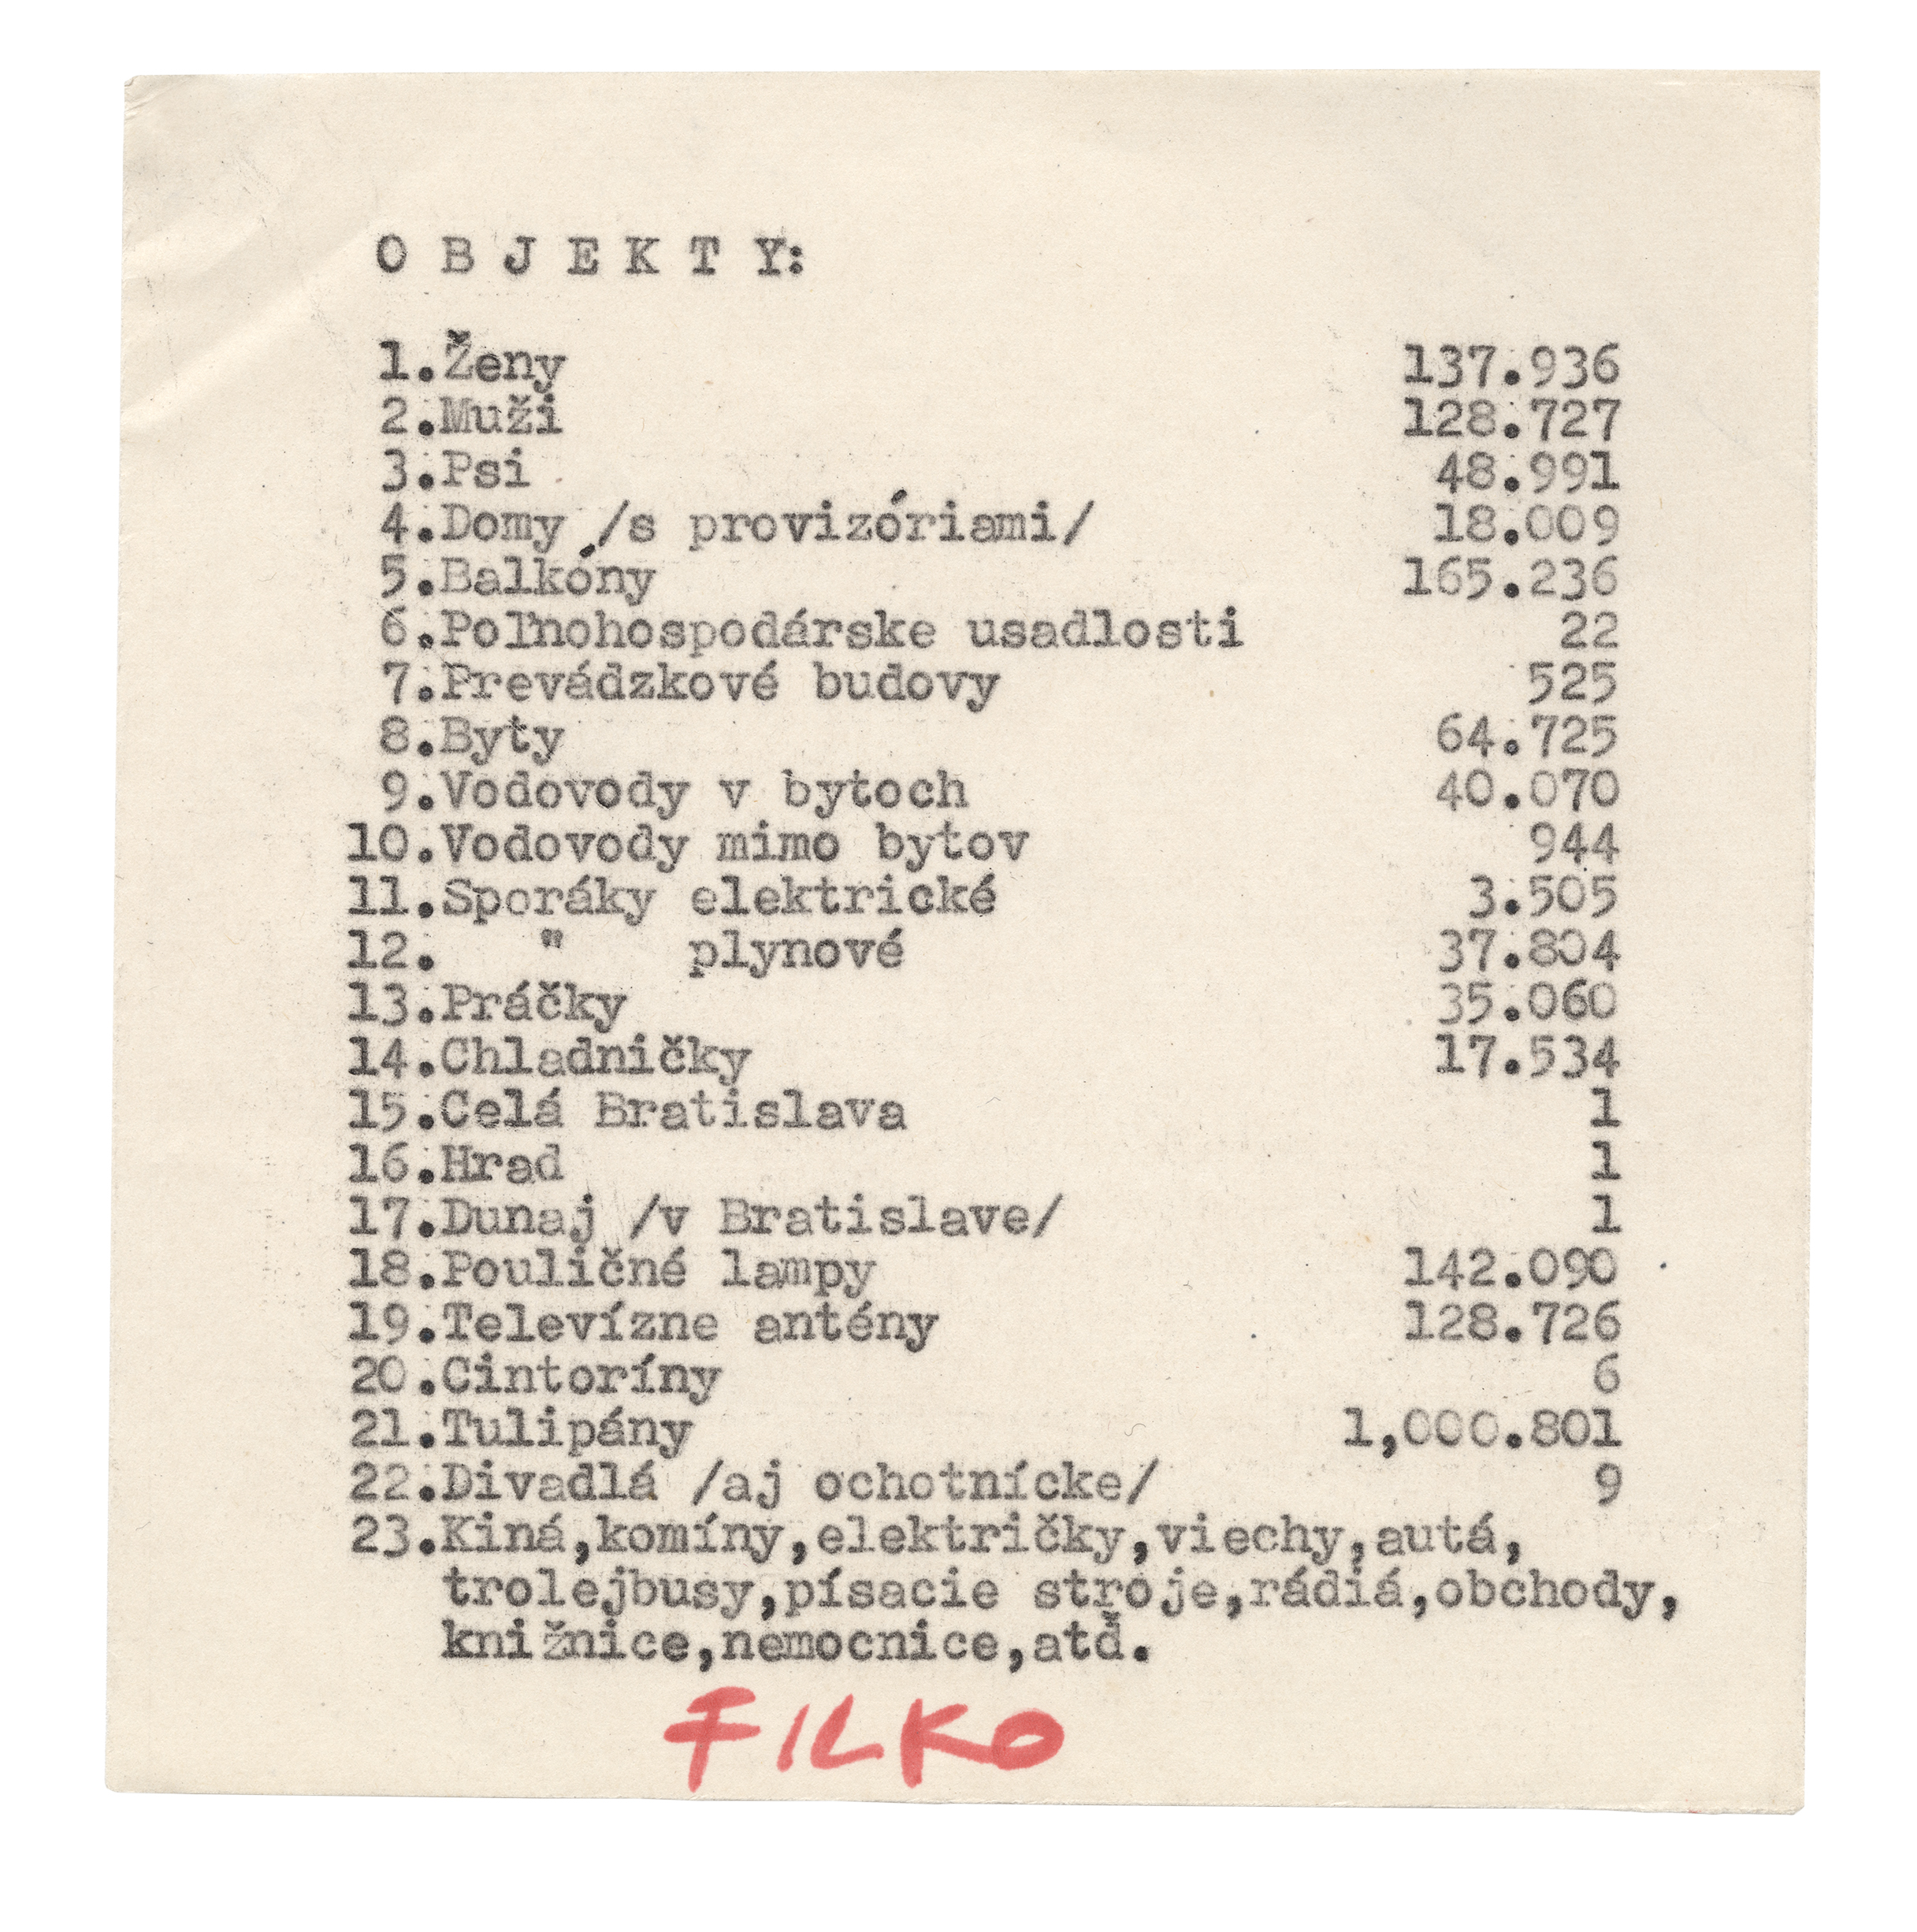 Stano Filko & Alex Mlynárčik: HAPPSOC I. pozvánka, 1965. 2 ks, 15 × 30; 14 × 13,7 cm, ofsetová tlač, papier. Zbierka Linea